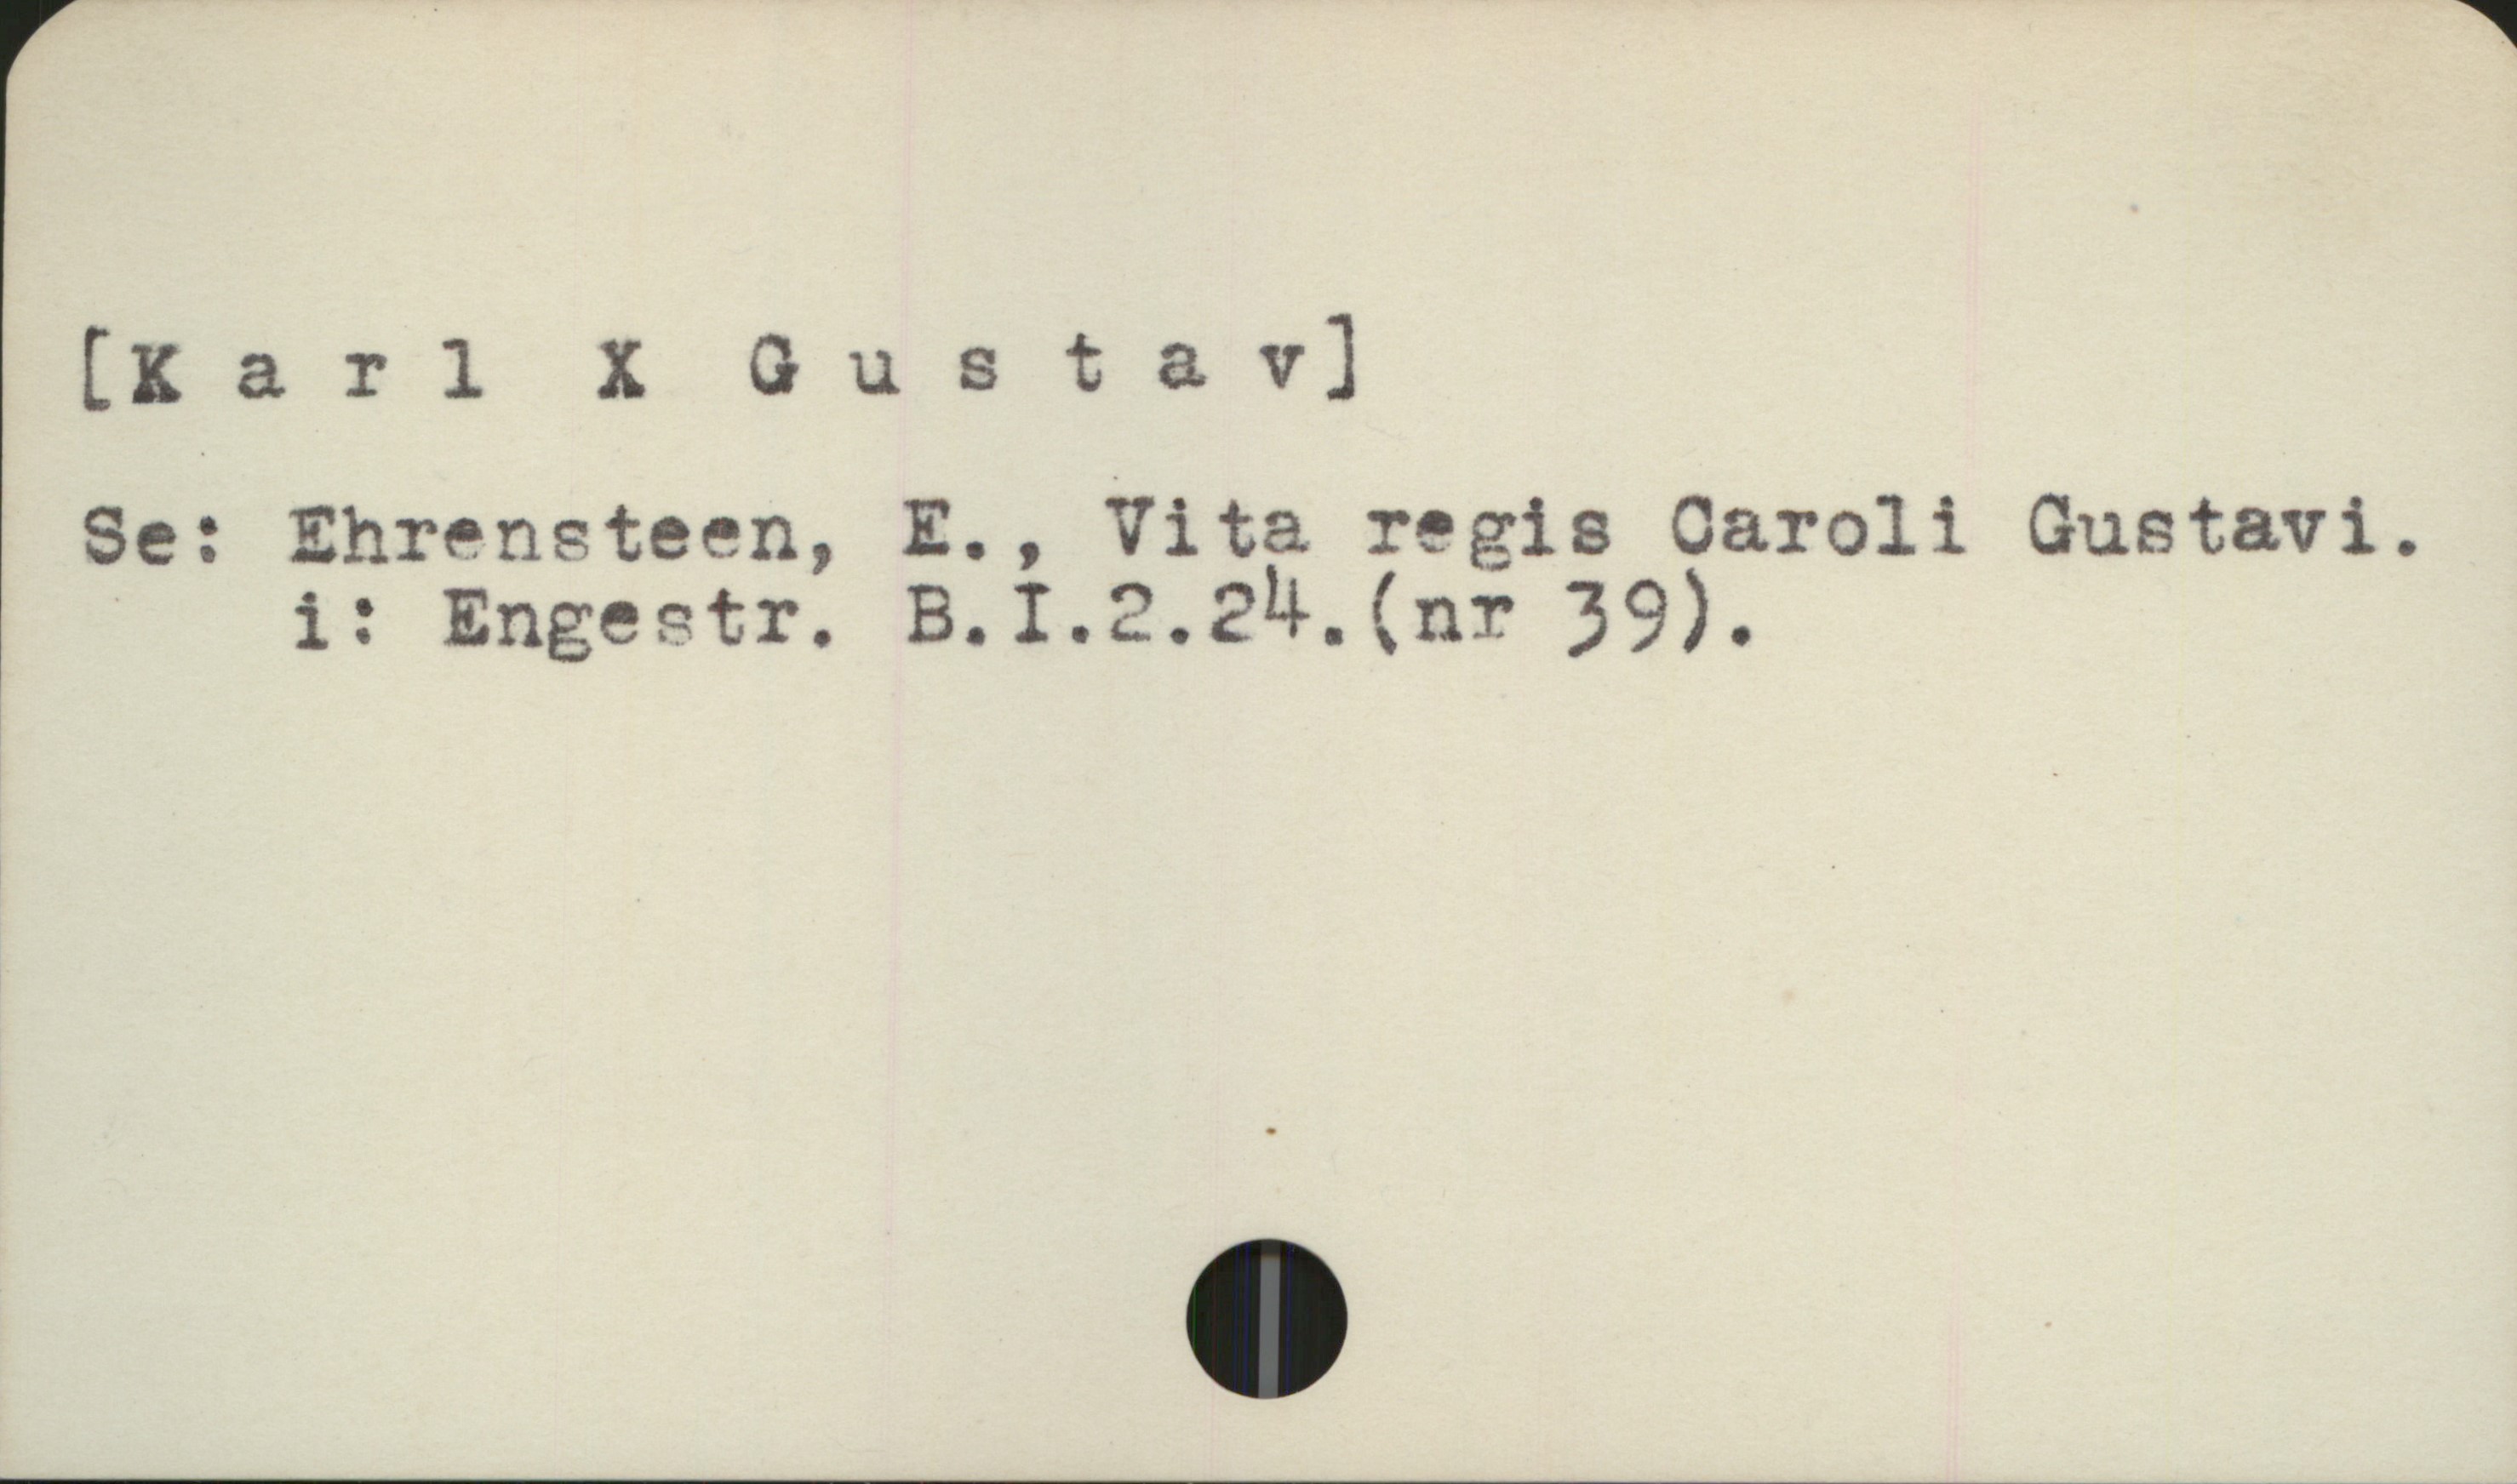  [Karl X Gustav]
Se: Ehrensteen, E., Vita regis Caroli Gustavi.
i: Engestr. B.I.2.2M.(nr 39).

